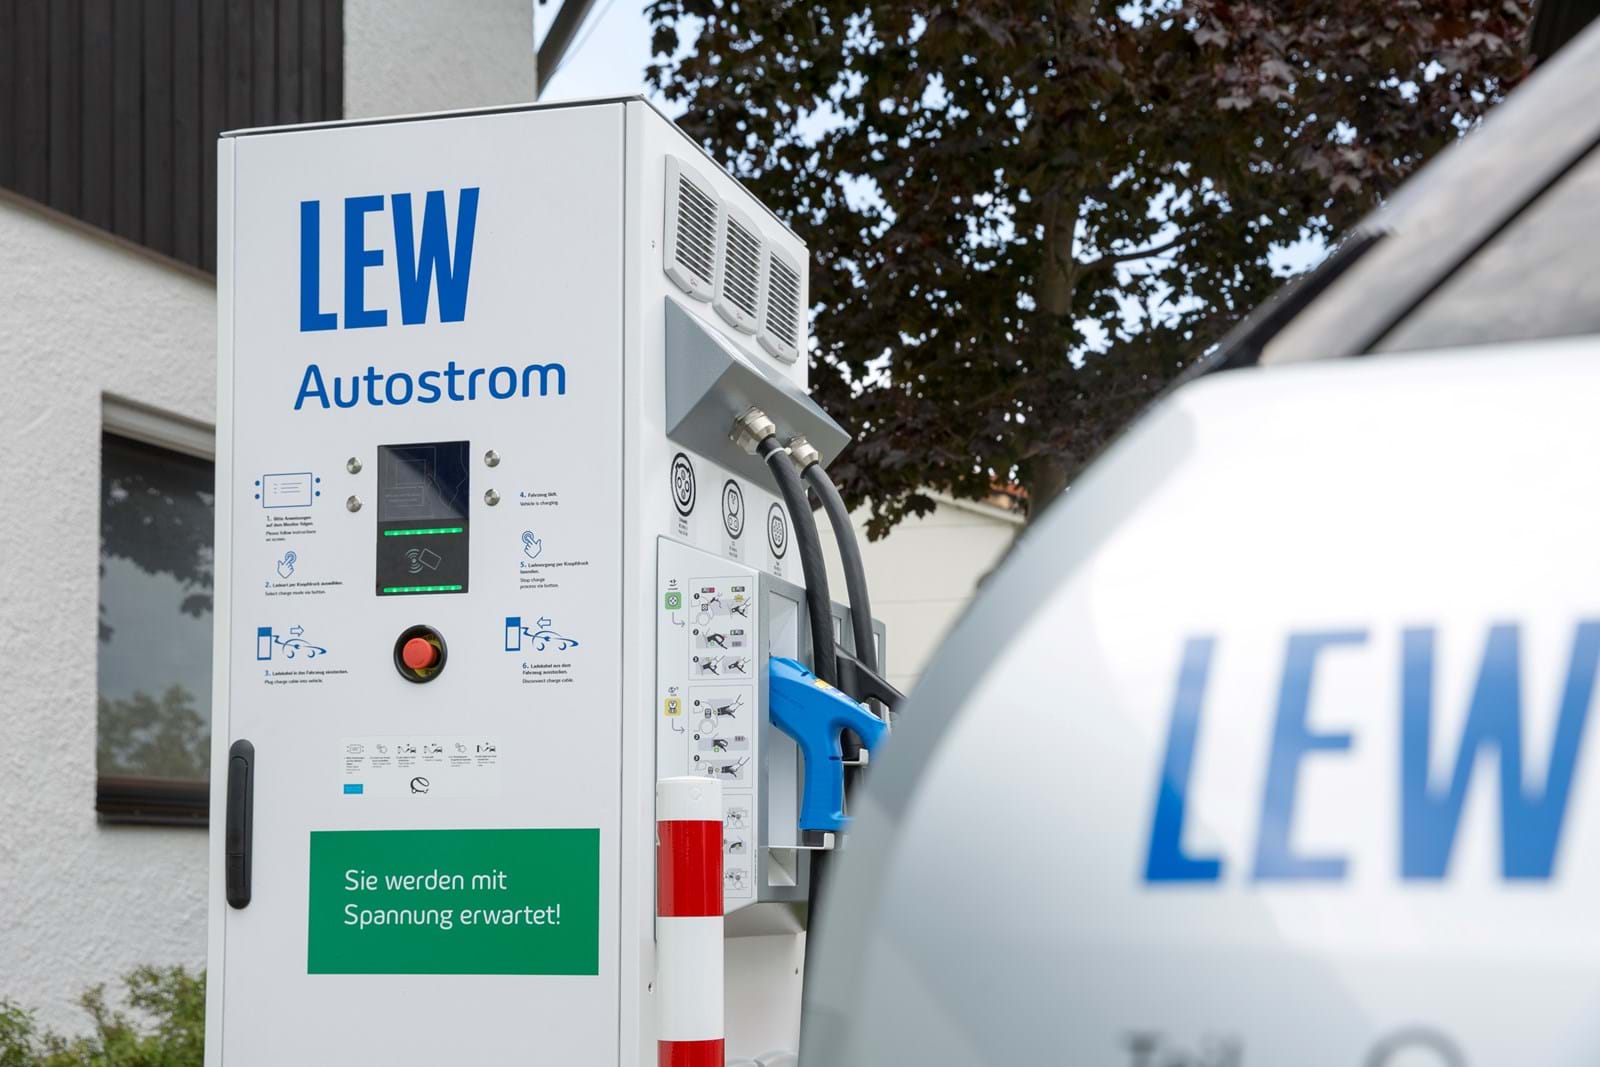 LEW betreibt in der Region 21 Gleichstrom-Schnellladestationen, an denen der Akku eines Elektroautos besonders schnell aufgeladen werden kann.